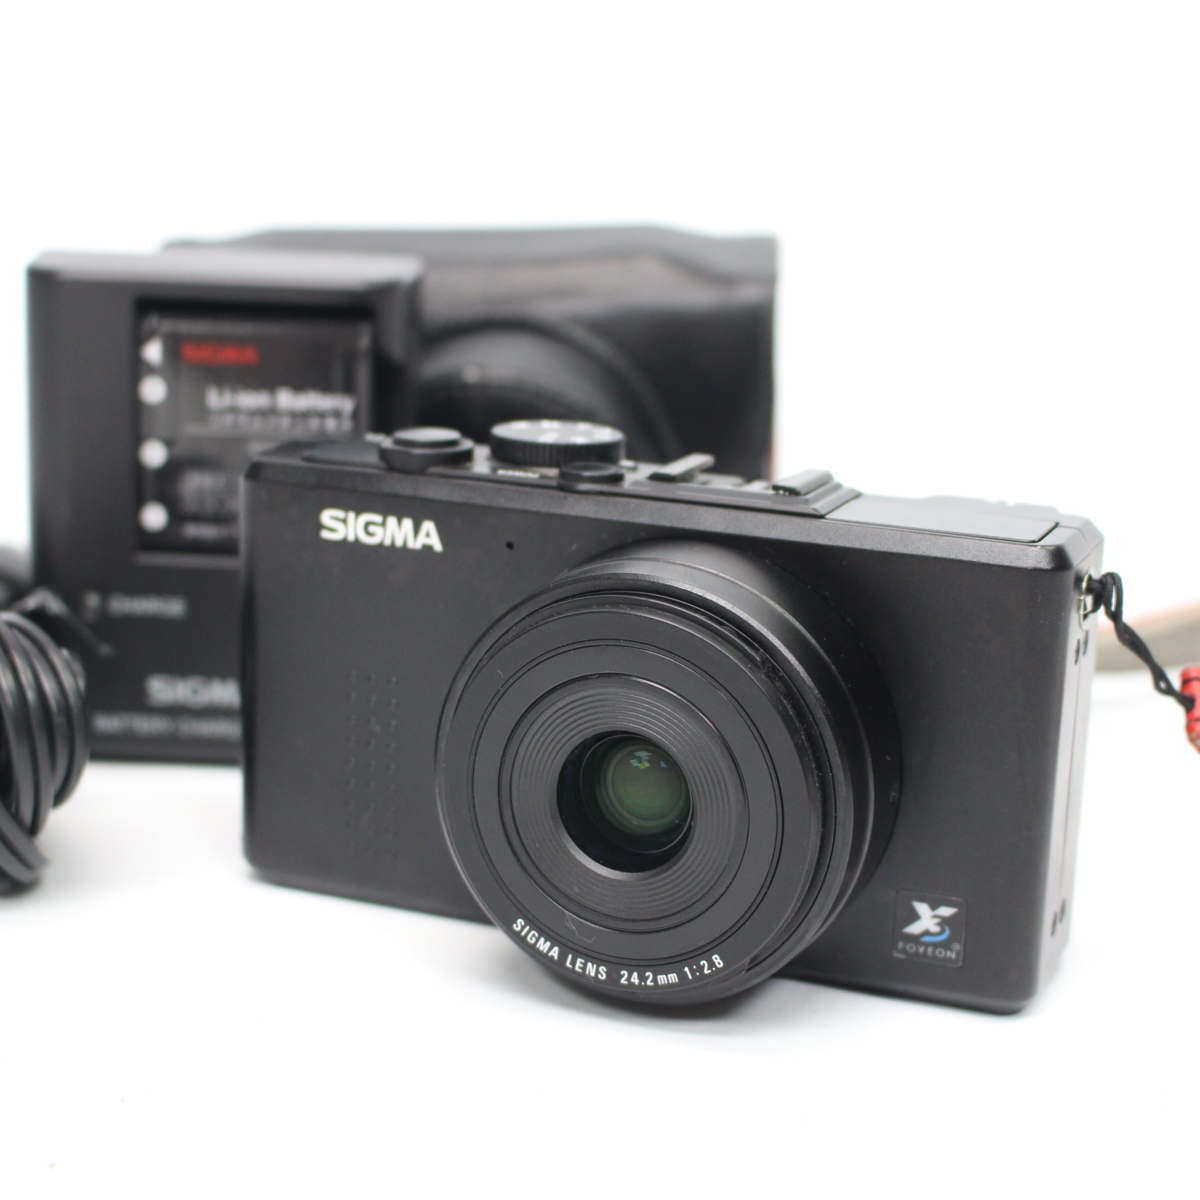 東京都中央区にて シグマ コンパクトデジタルカメラ DP2s  を出張買取させて頂きました。